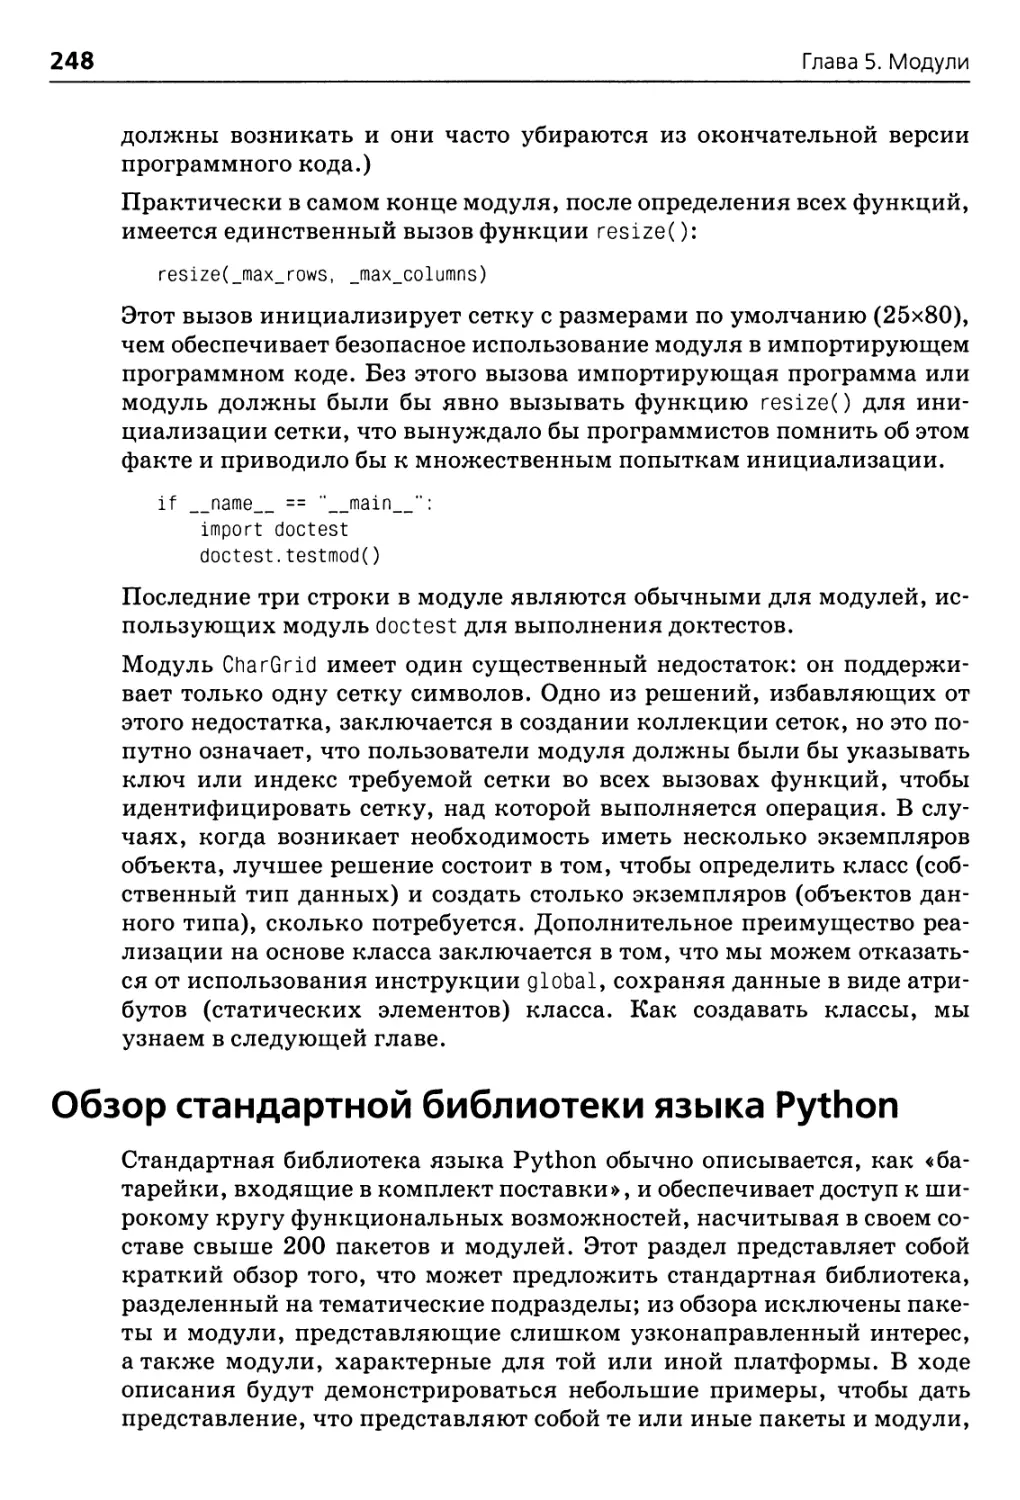 Обзор стандартной библиотеки языка Python